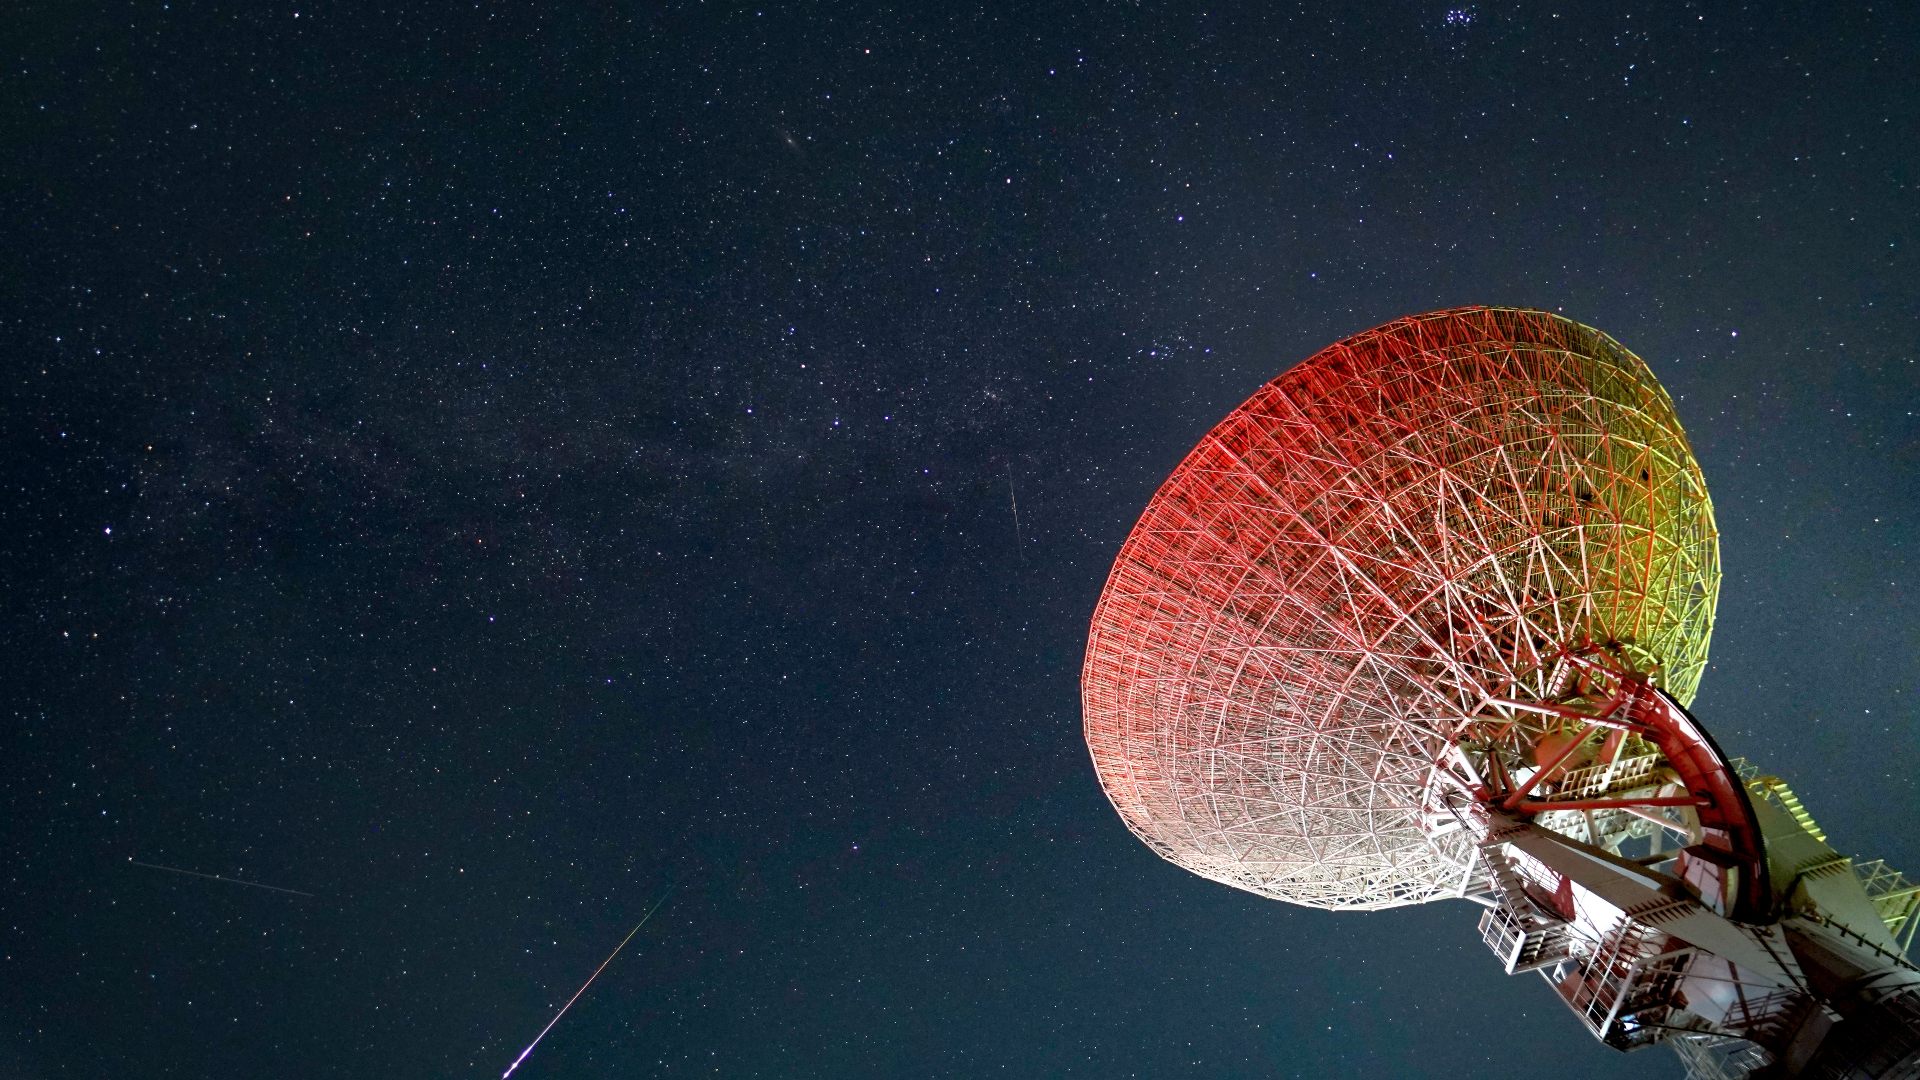 Brillantes meteoros prusianos atraviesan el cielo estrellado con el gran plato del telescopio a la derecha de la imagen.